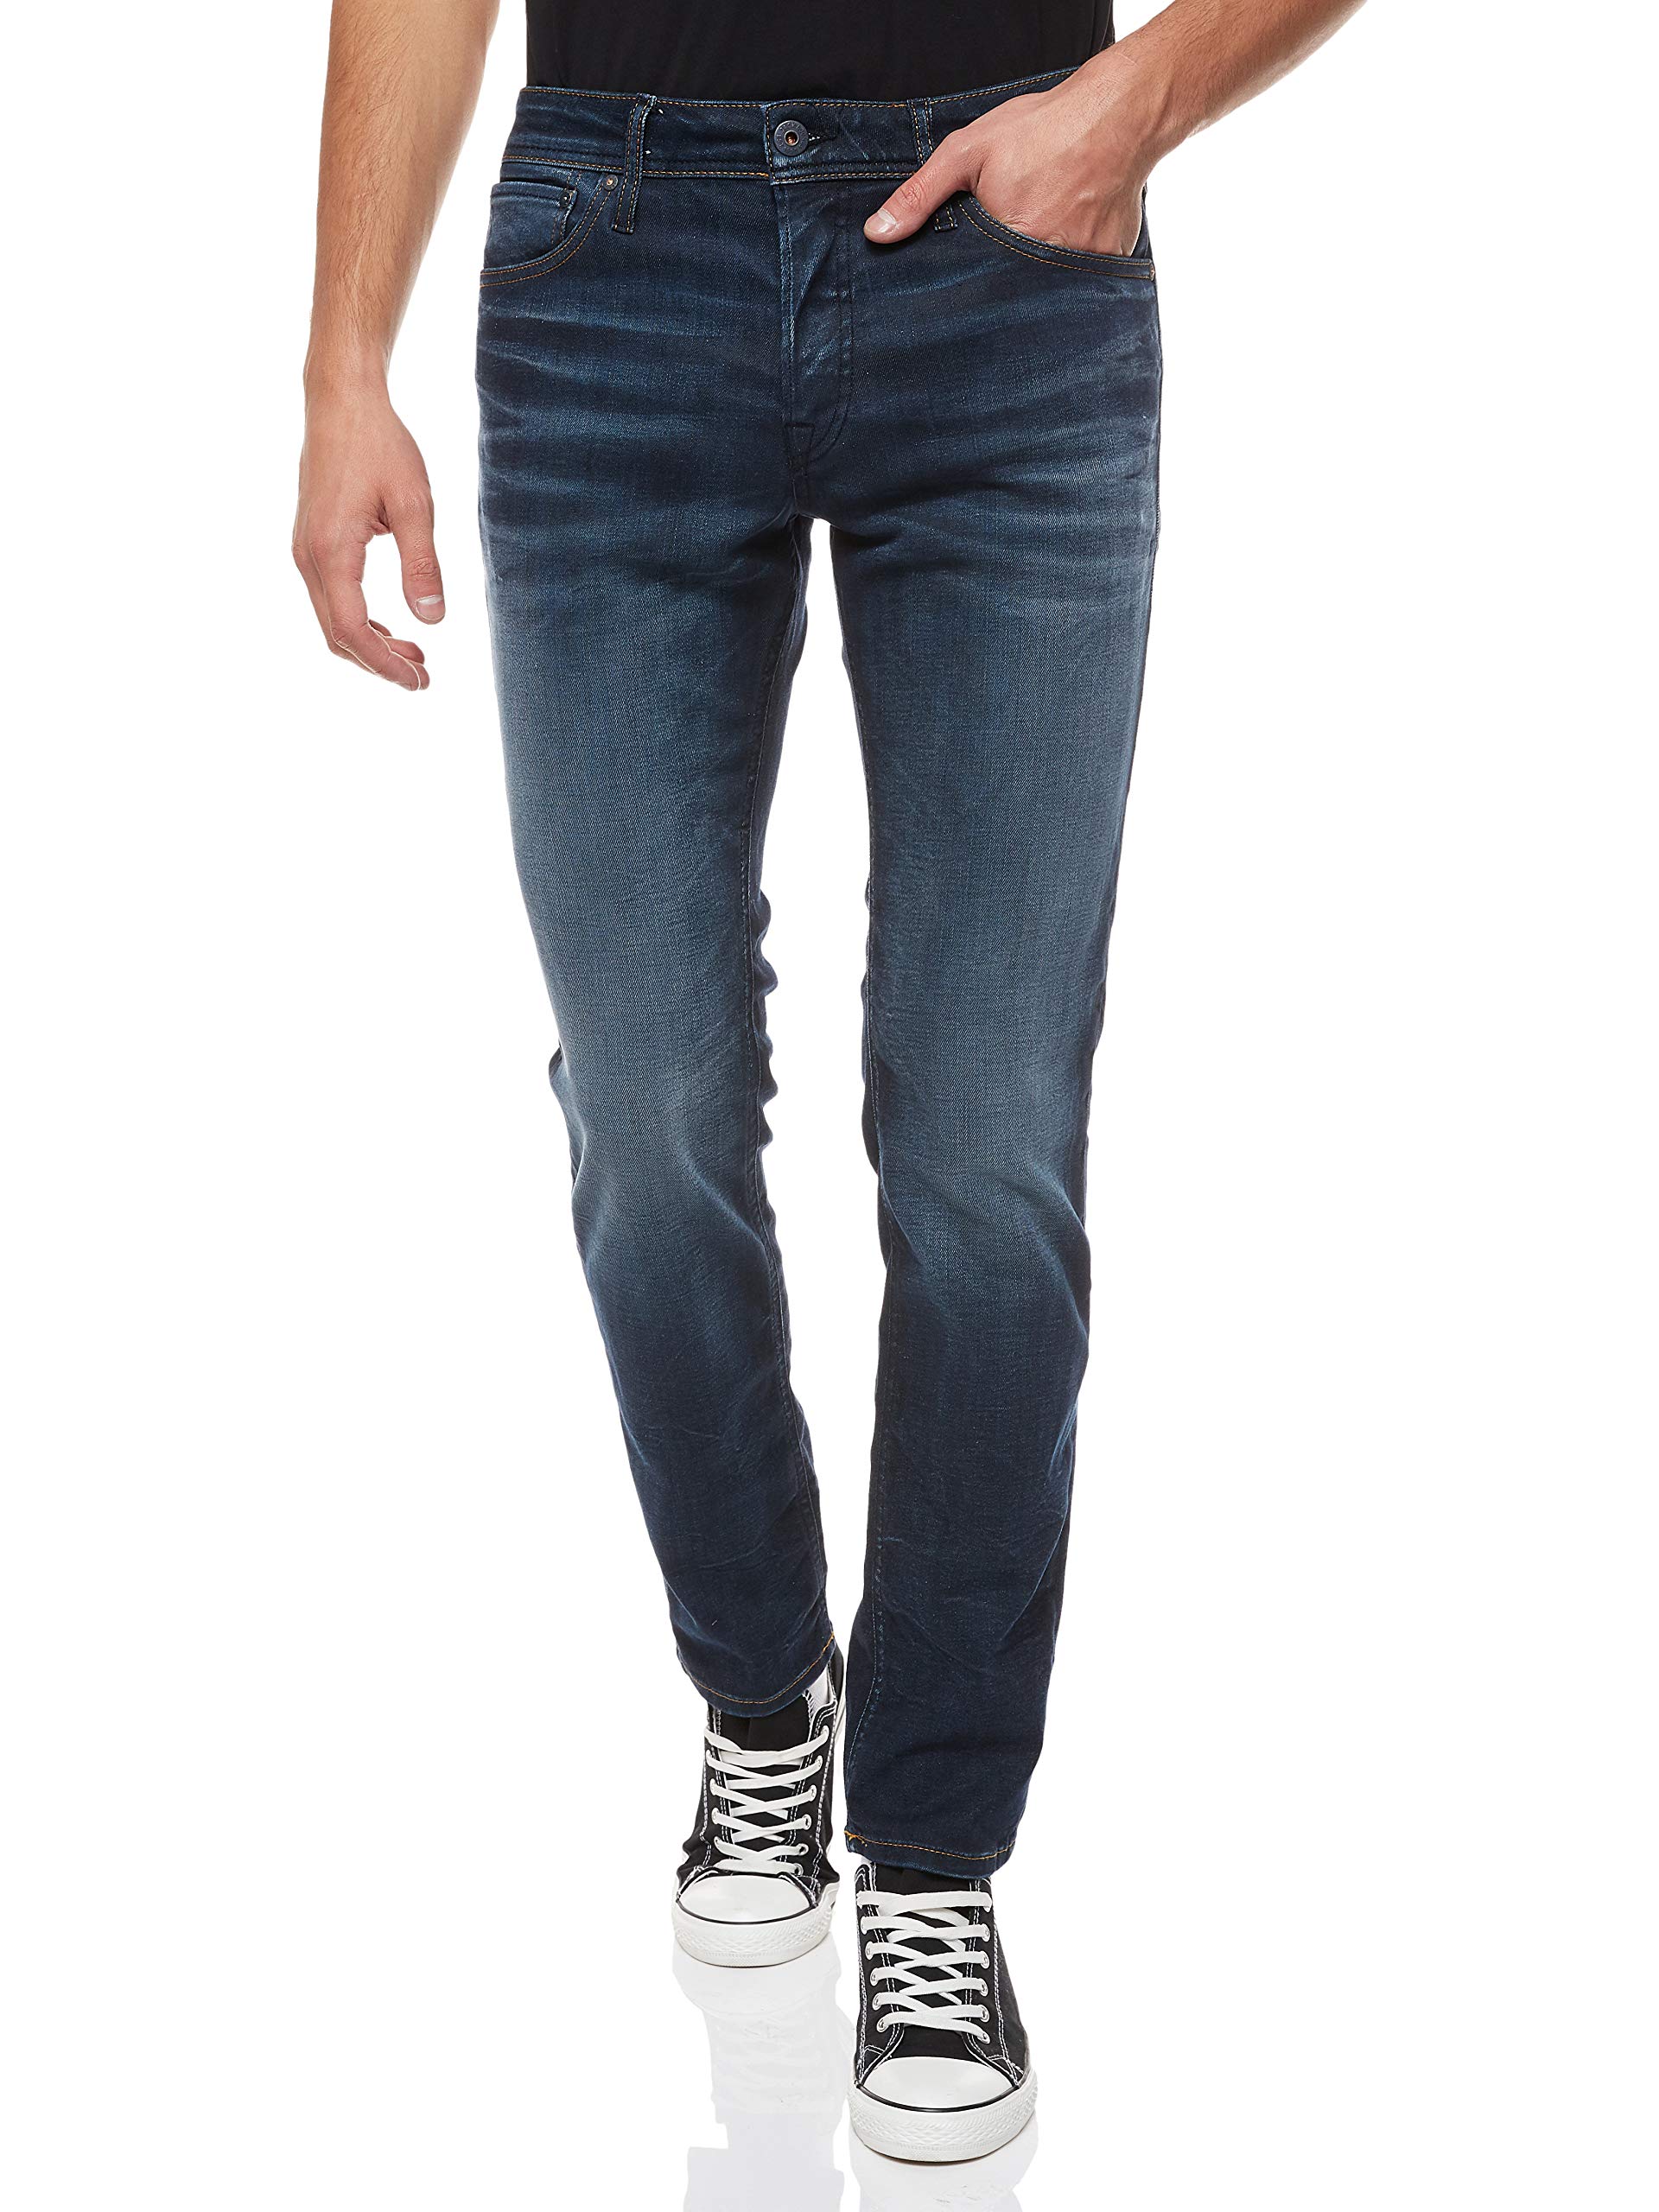 Herren Jack & Jones Jeans Tim Straight Legs Slim Fit Flat Front Tim ORIGINAL, Farben:Dunkelblau, Größe Jeans:29W / 32L